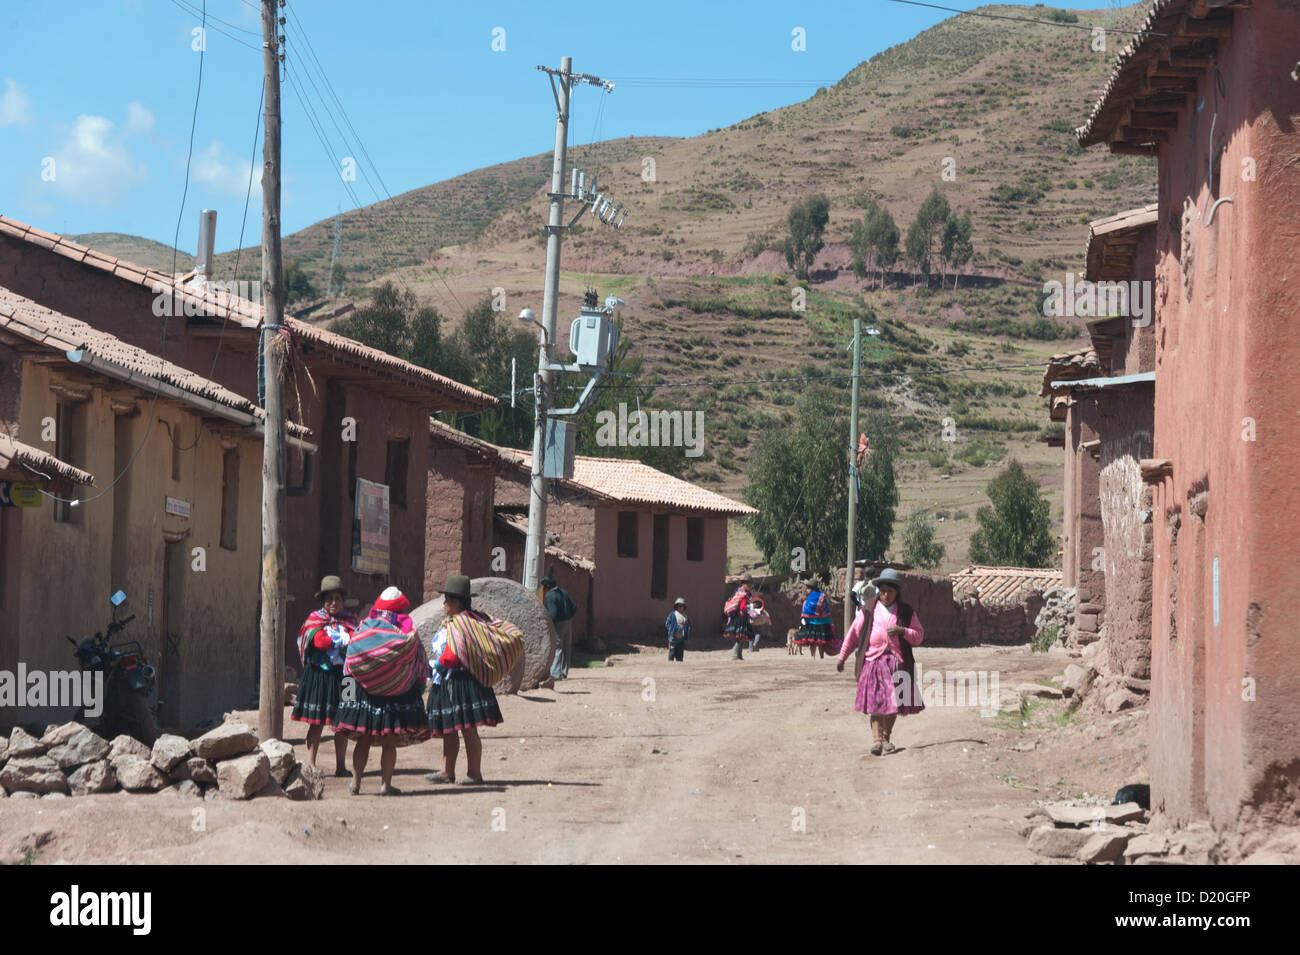 Le donne di un villaggio nelle Ande hanno formato una cooperativa e producono cinture, borse, panni, che vendono ai turisti. Piano di ONG fornisce formazione e materiali, telai e macchine da cucire. I profitti sono divisi 50% alla comunità, 50% per i singoli donna Foto Stock